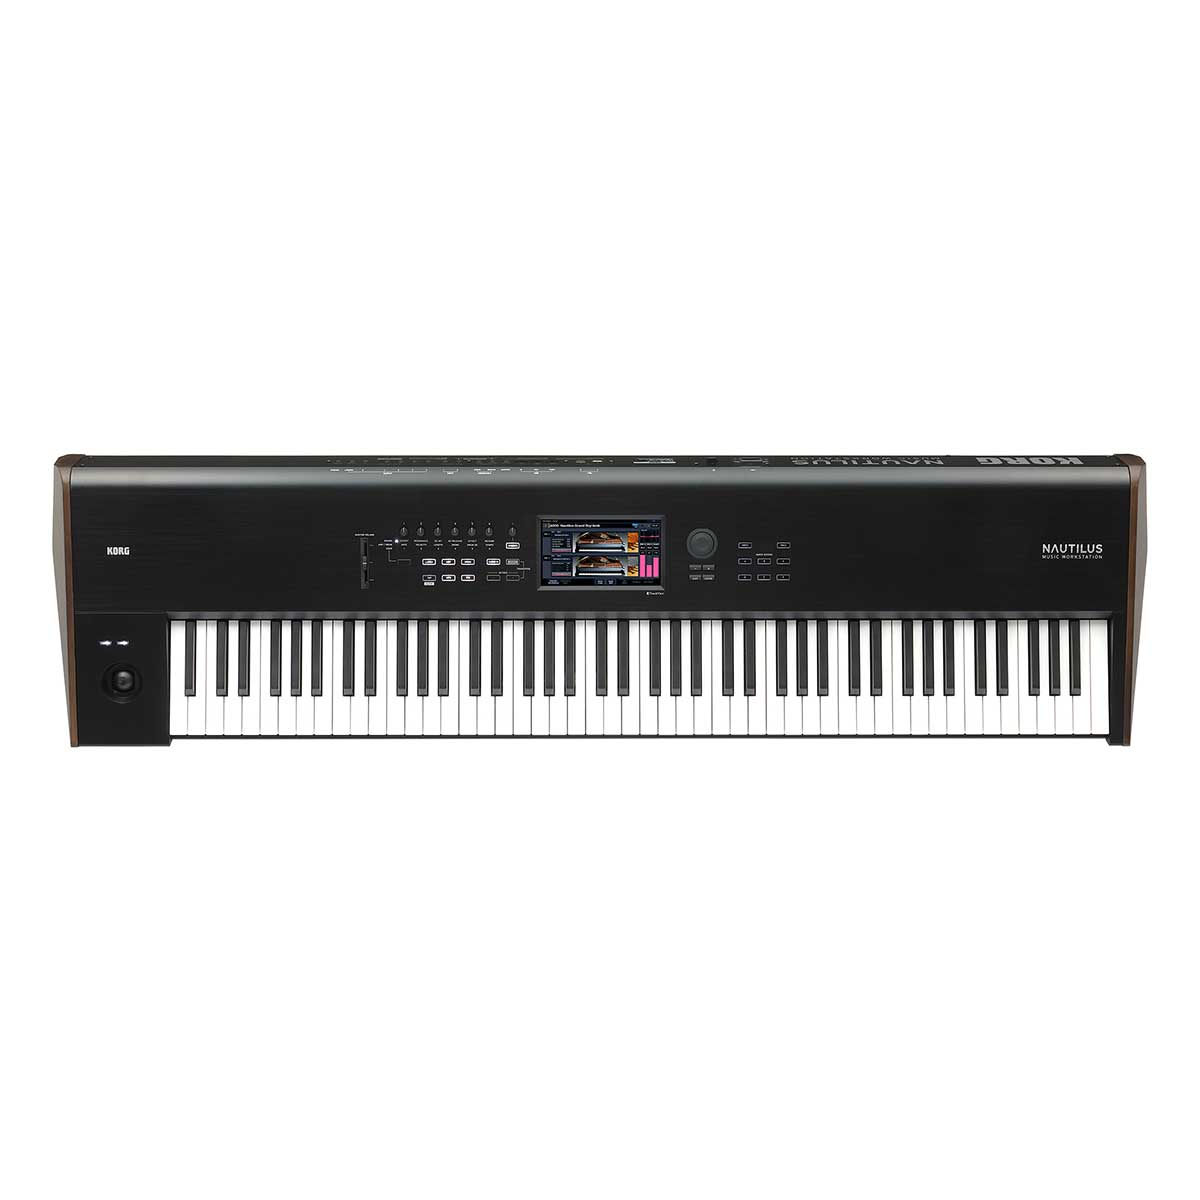 Korg Nautilus 88 88-key Synthesizer Workstation